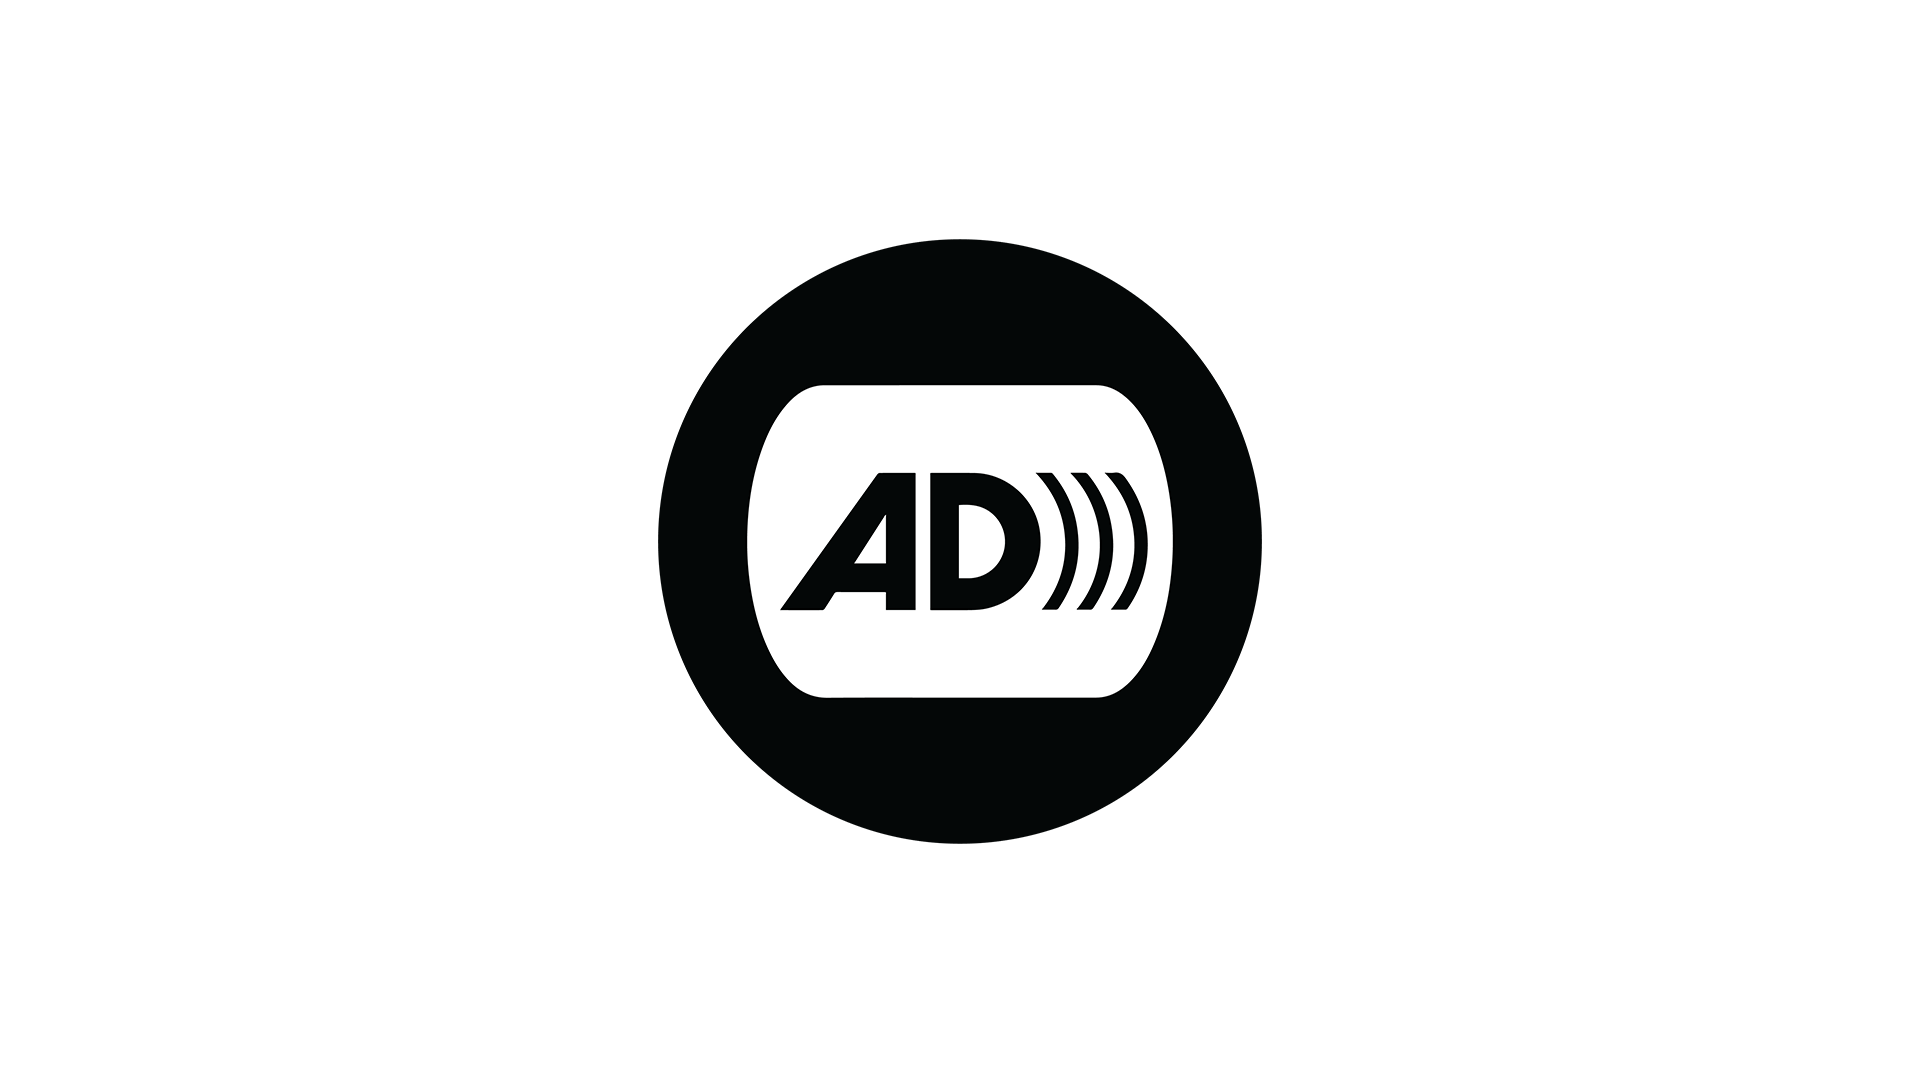 Audio Description icon